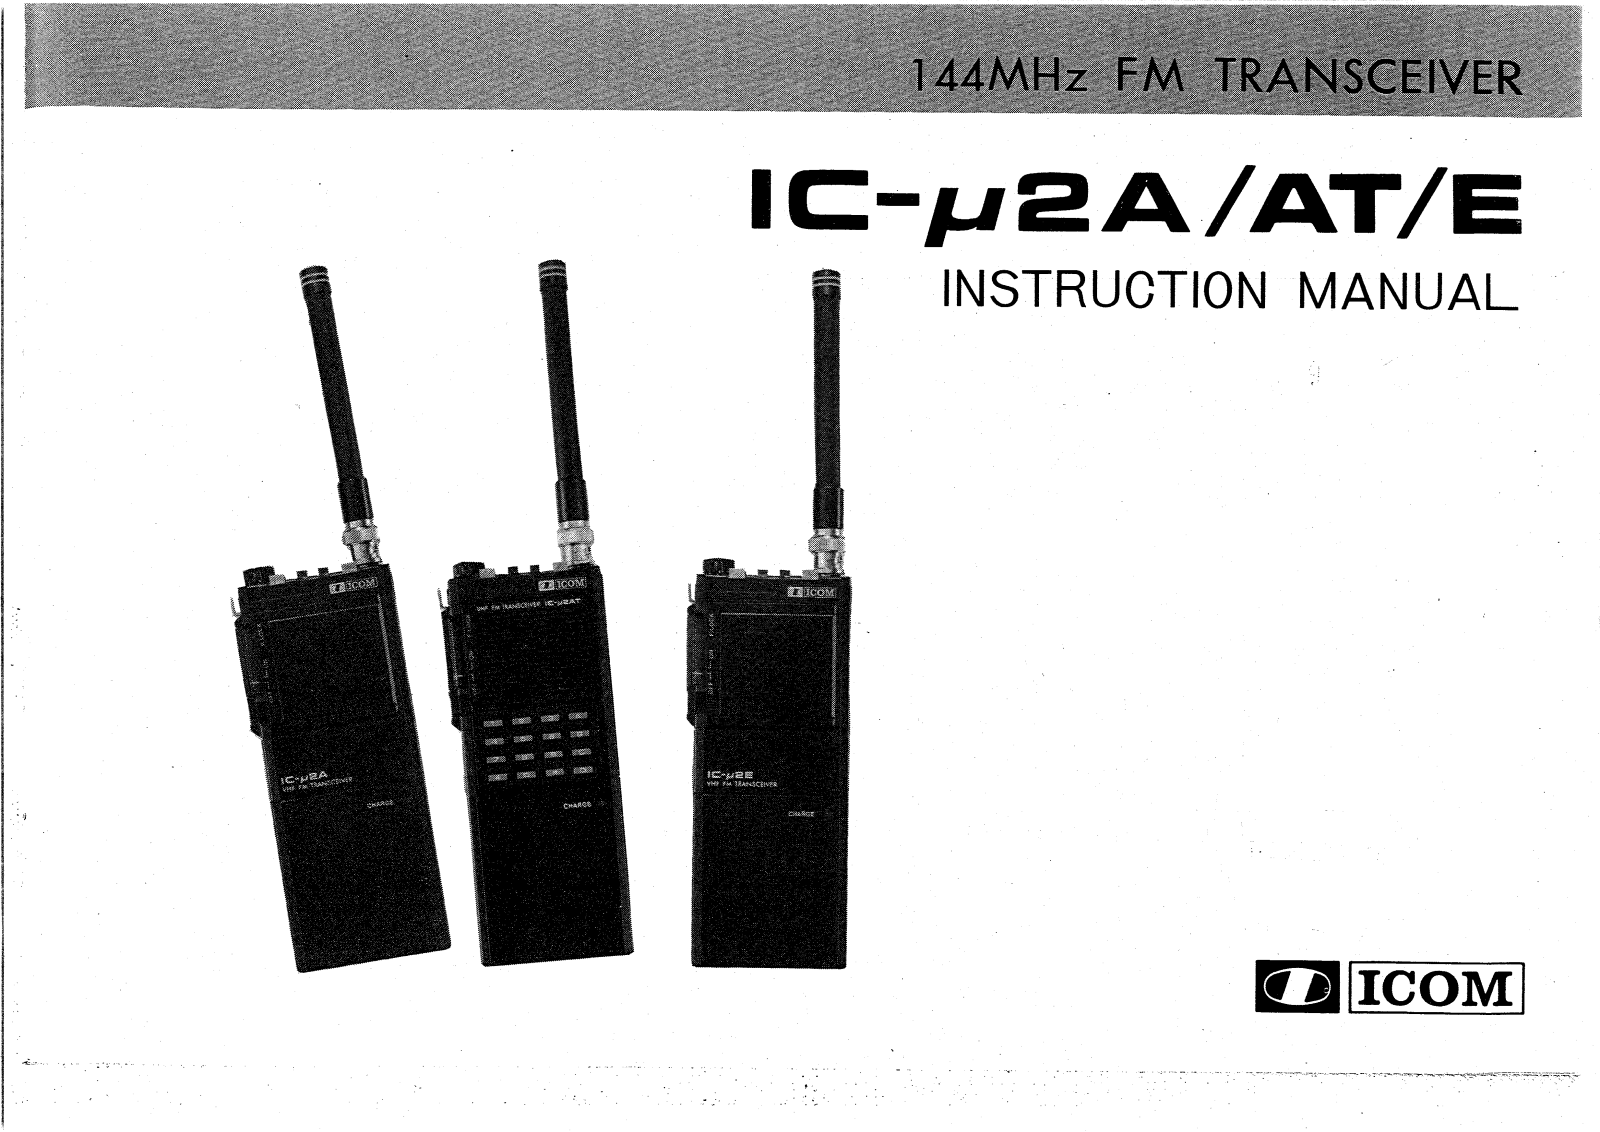 ICOM ICu2E, ICu2A, ICu2AT User Manual